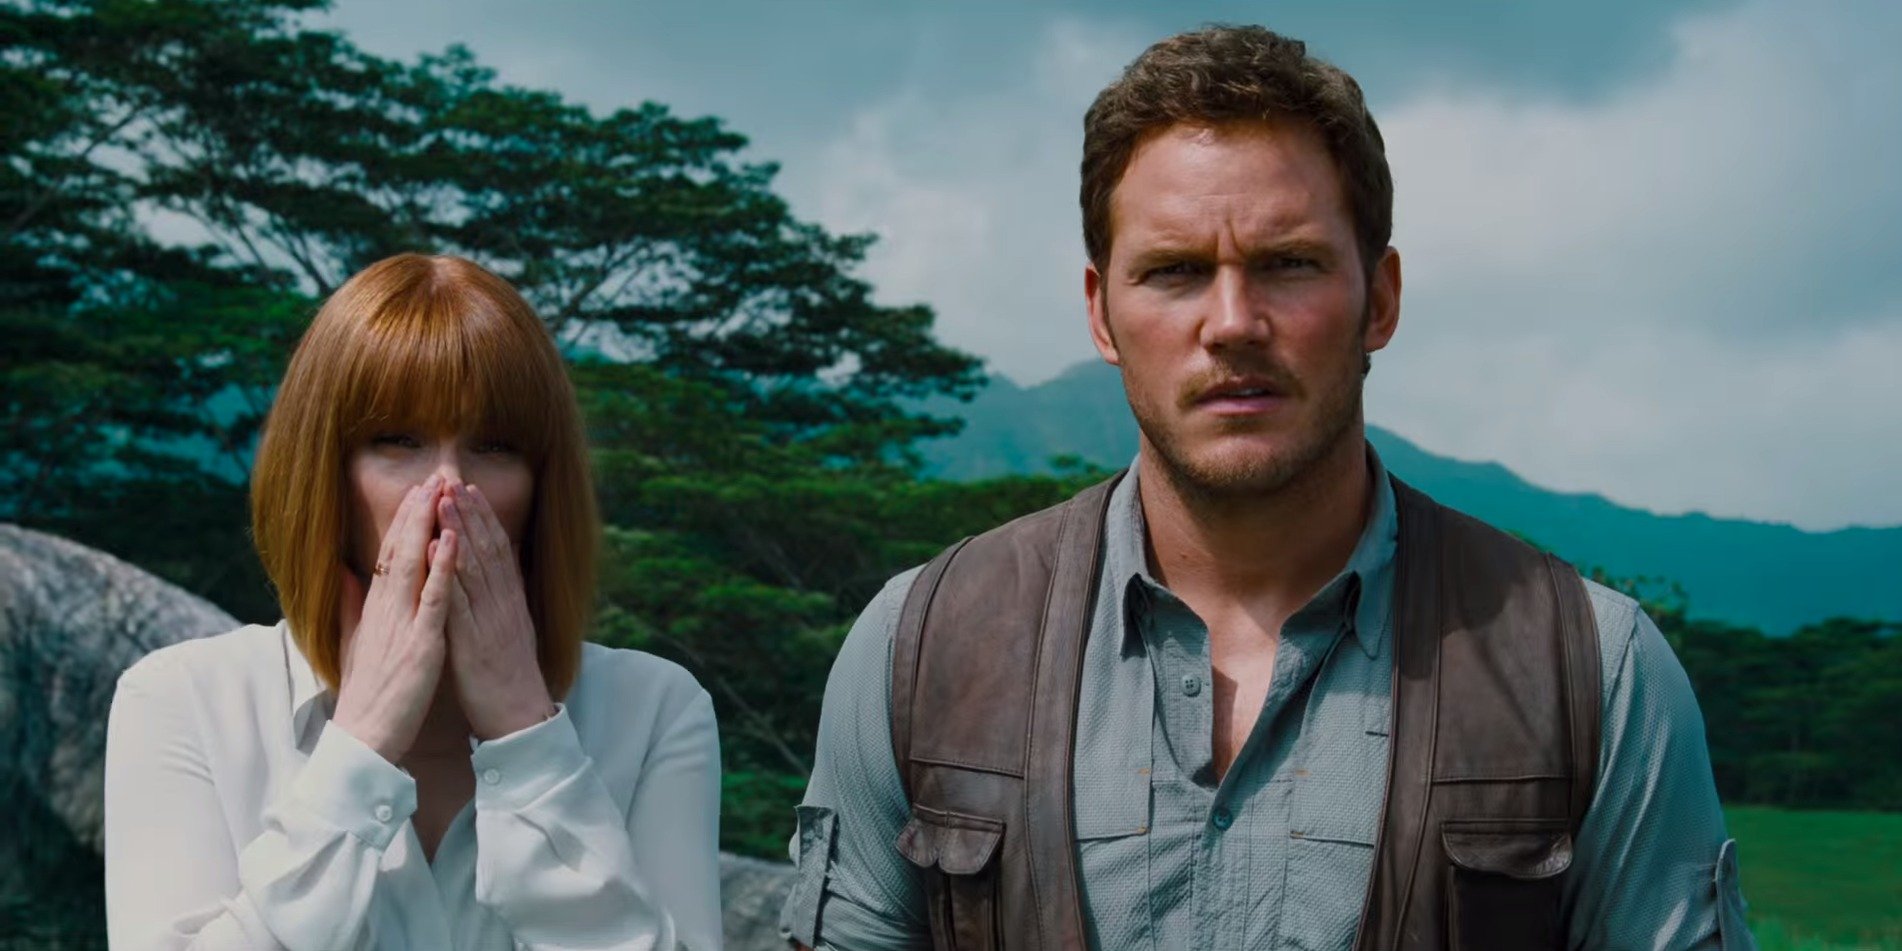 Crítica com Spoilers: Jurassic World, com Chris Pratt